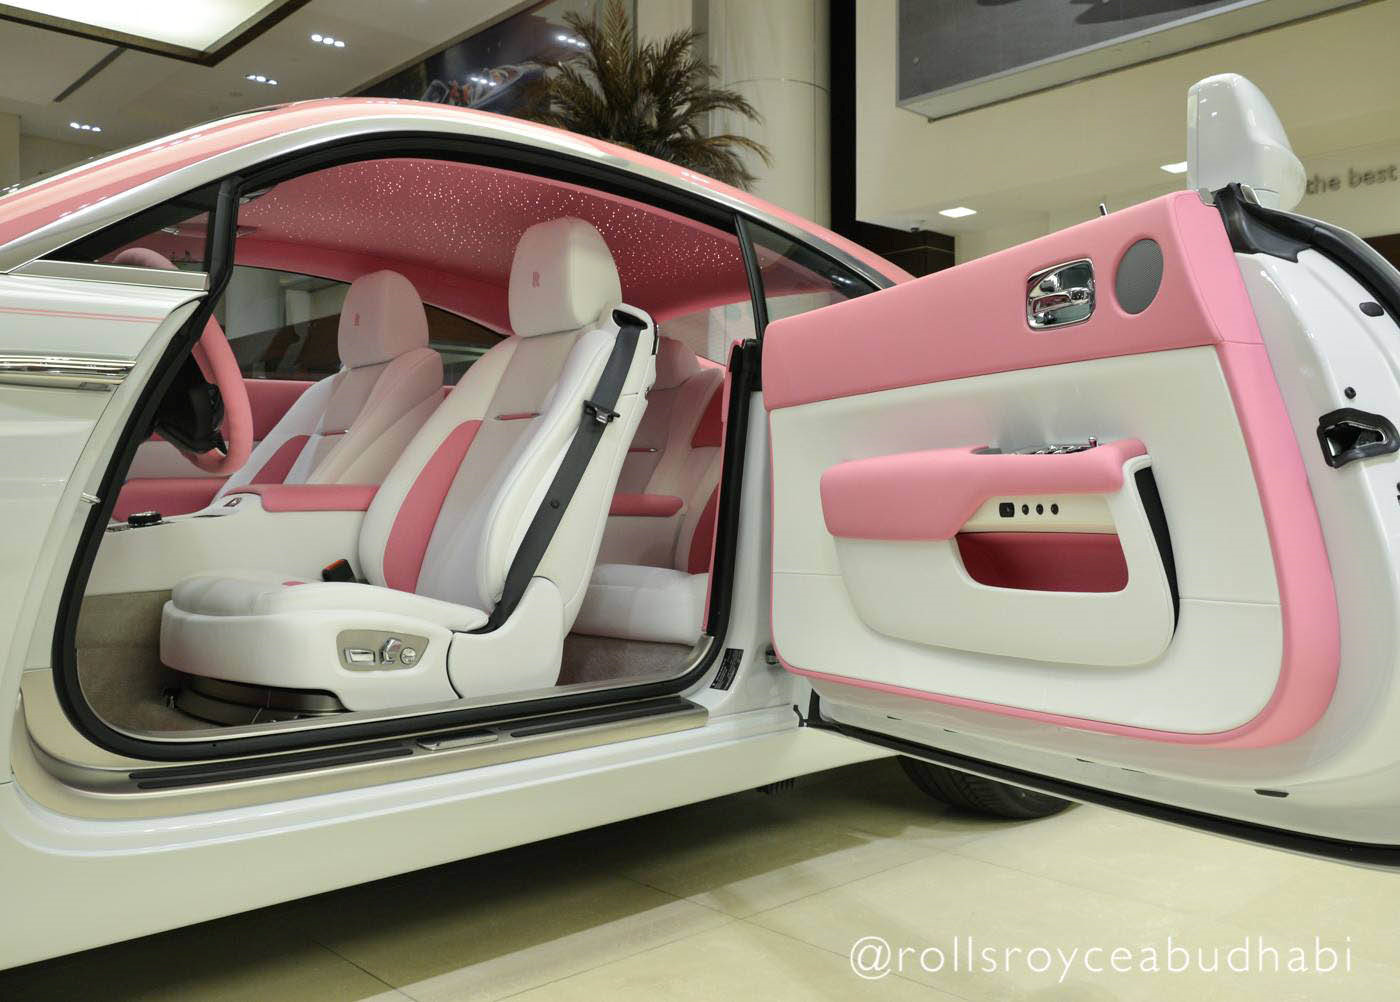 Tin tức - Ngắm Rolls-Royce Wraith phiên bản Barbie hồng “độc nhất vô nhị“ ở Abu Dhabi (Hình 2).